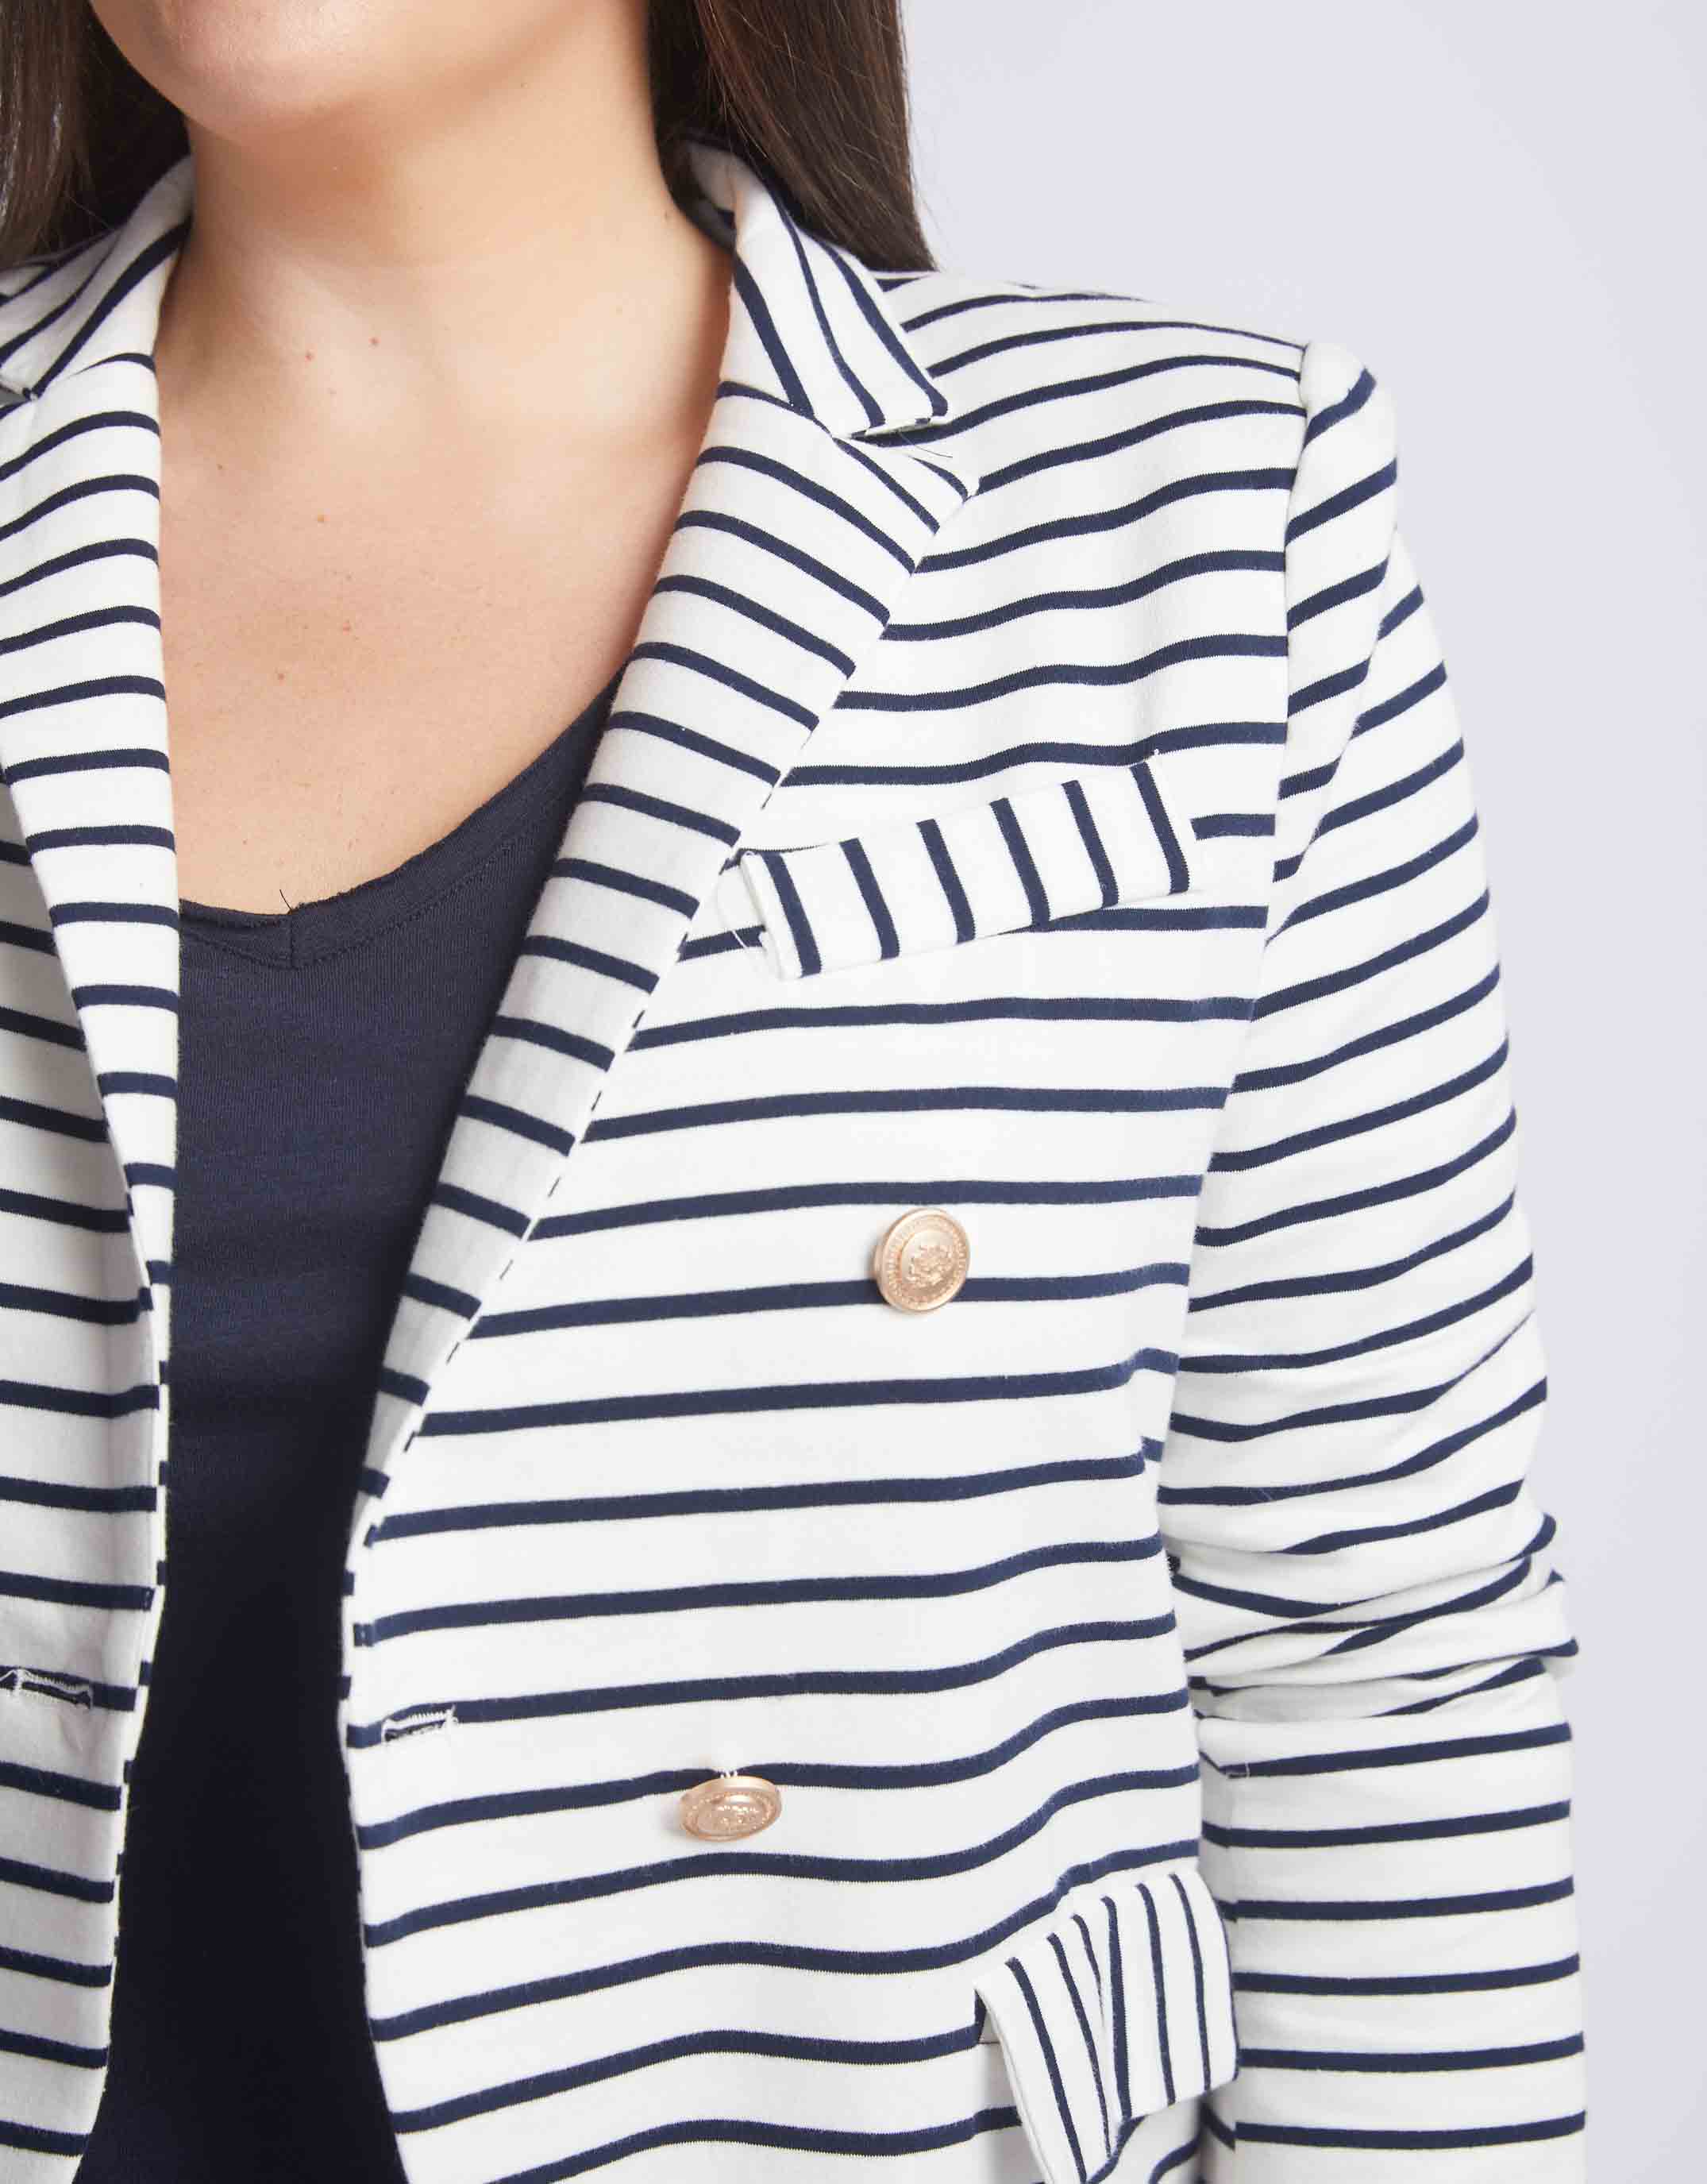 Gordon Smith Laura Stripe Blazer Navy - Plus Size Clothing - paulaglazebrook. Womenswear